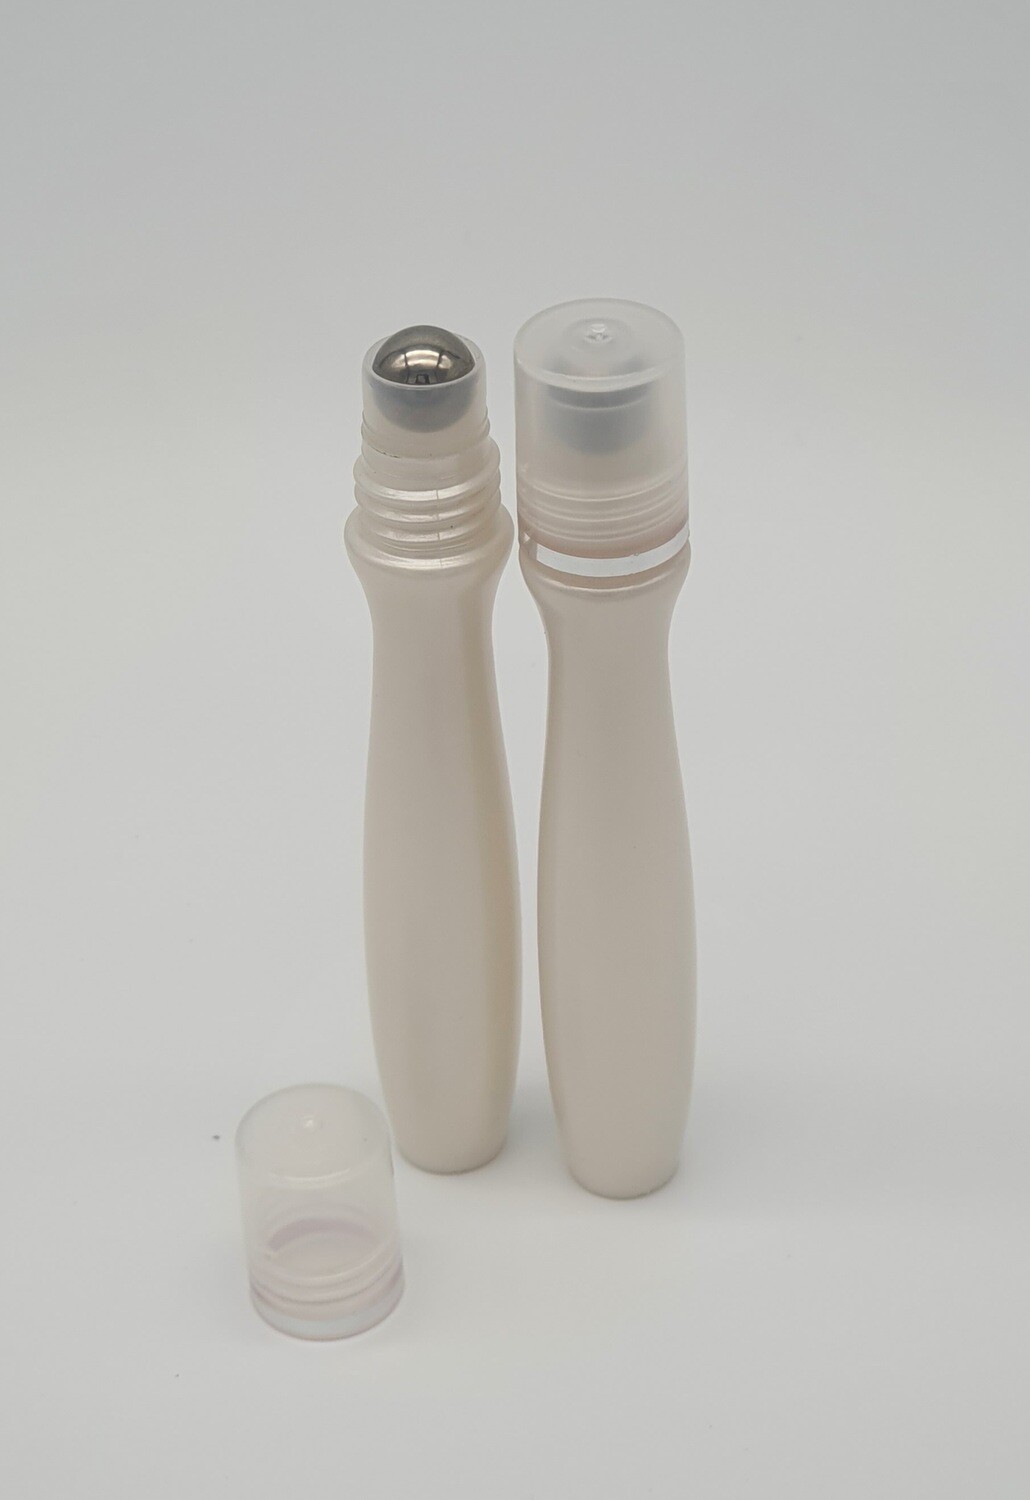 8ML Plastic Deodorant Roller Bottles Empty Refillable Rollerball Bottle